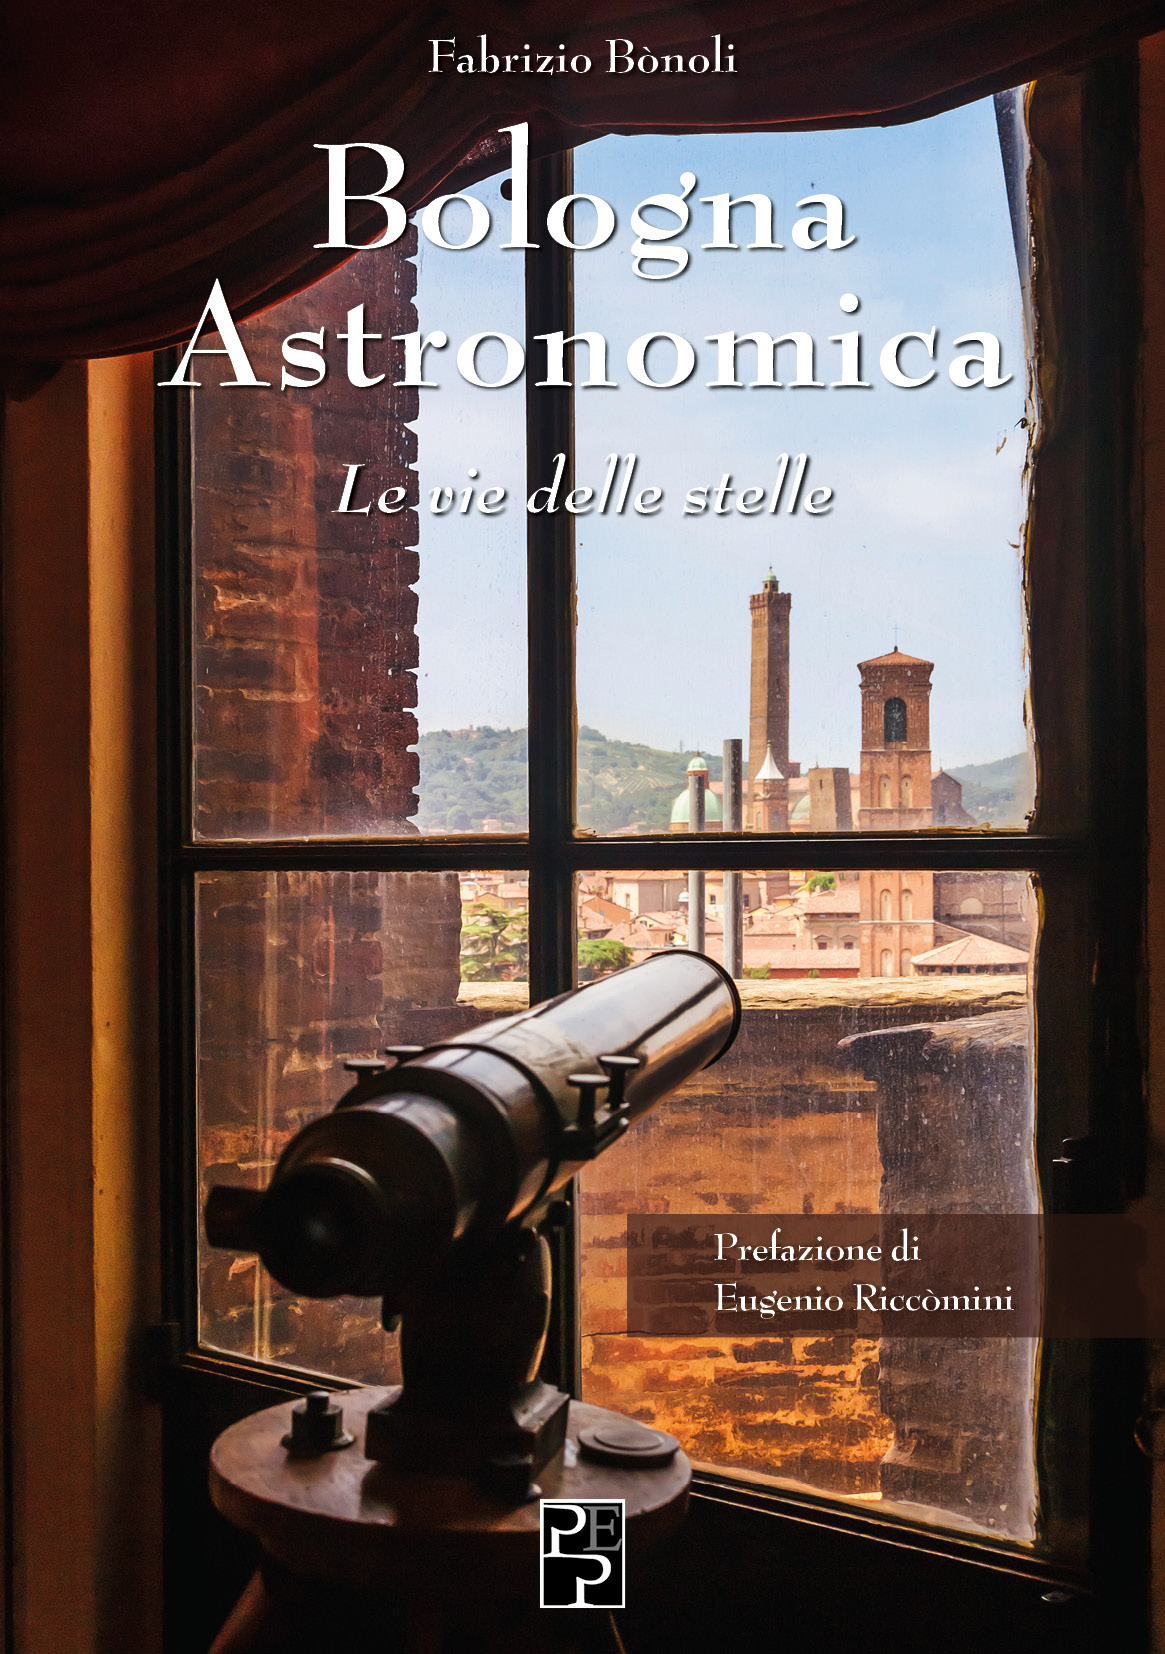 Bologna si veste di astronomia